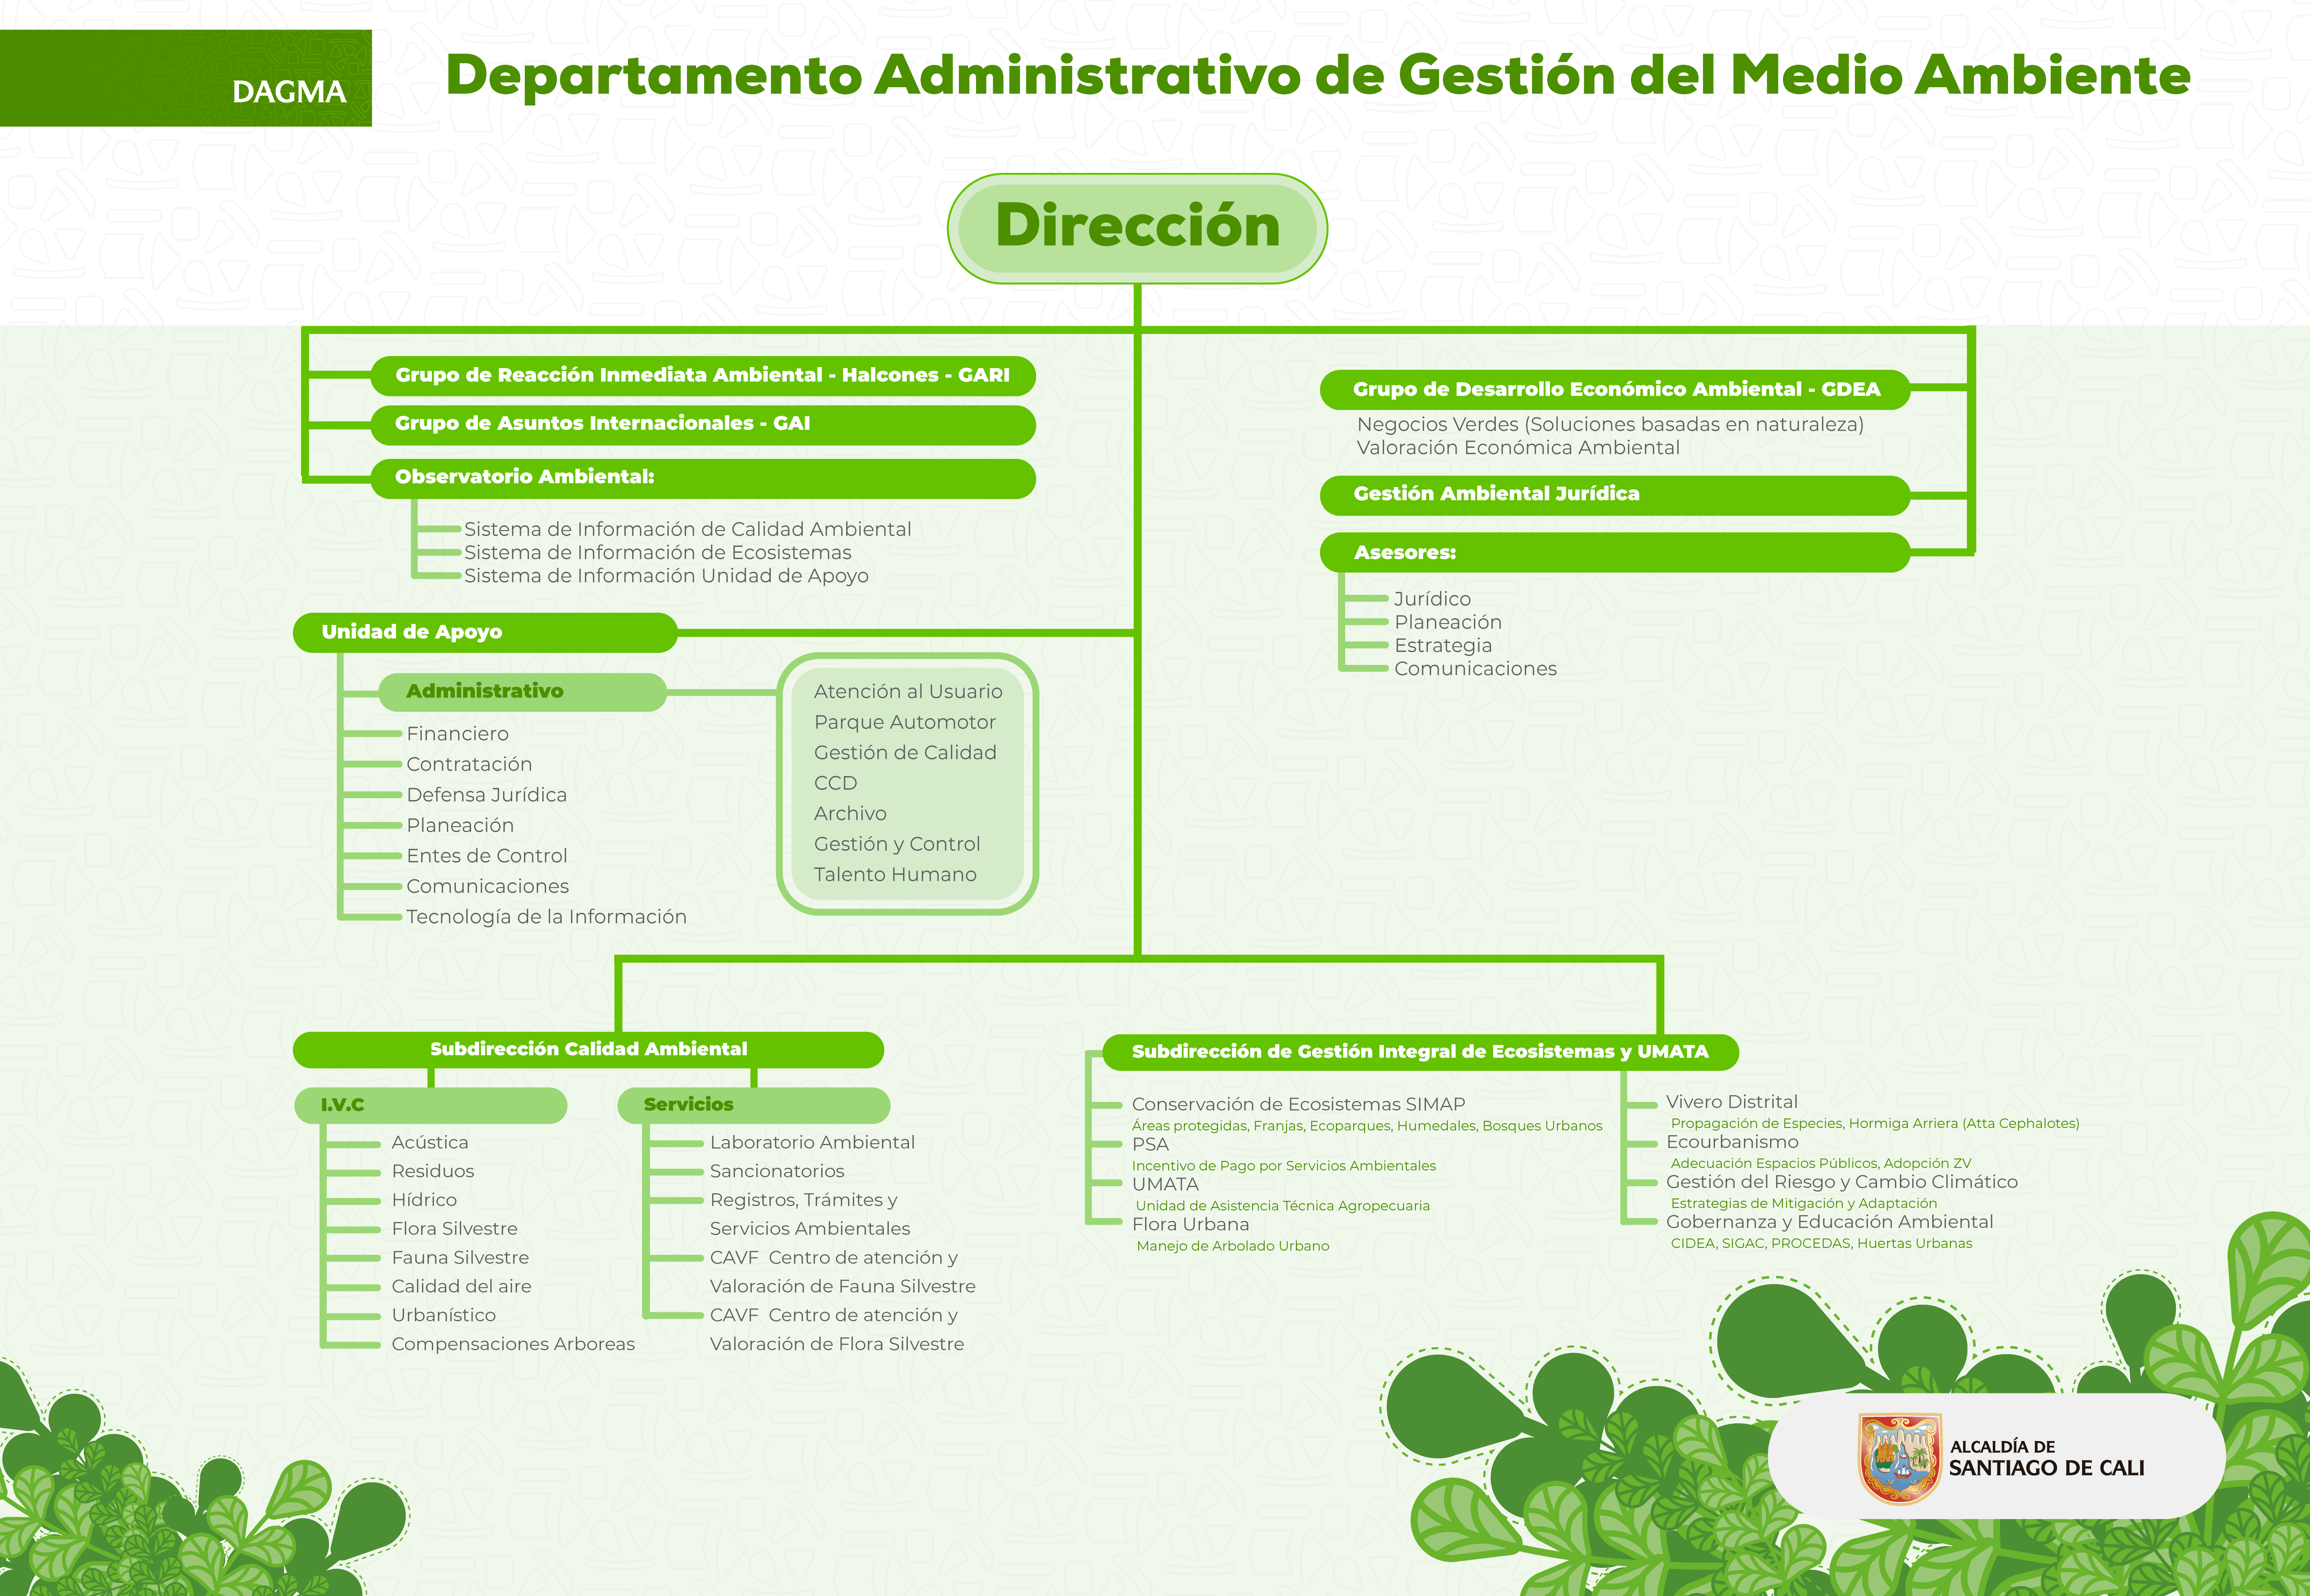 Organigrama del Departamento Administrativo de Gestión del Medio Ambiente